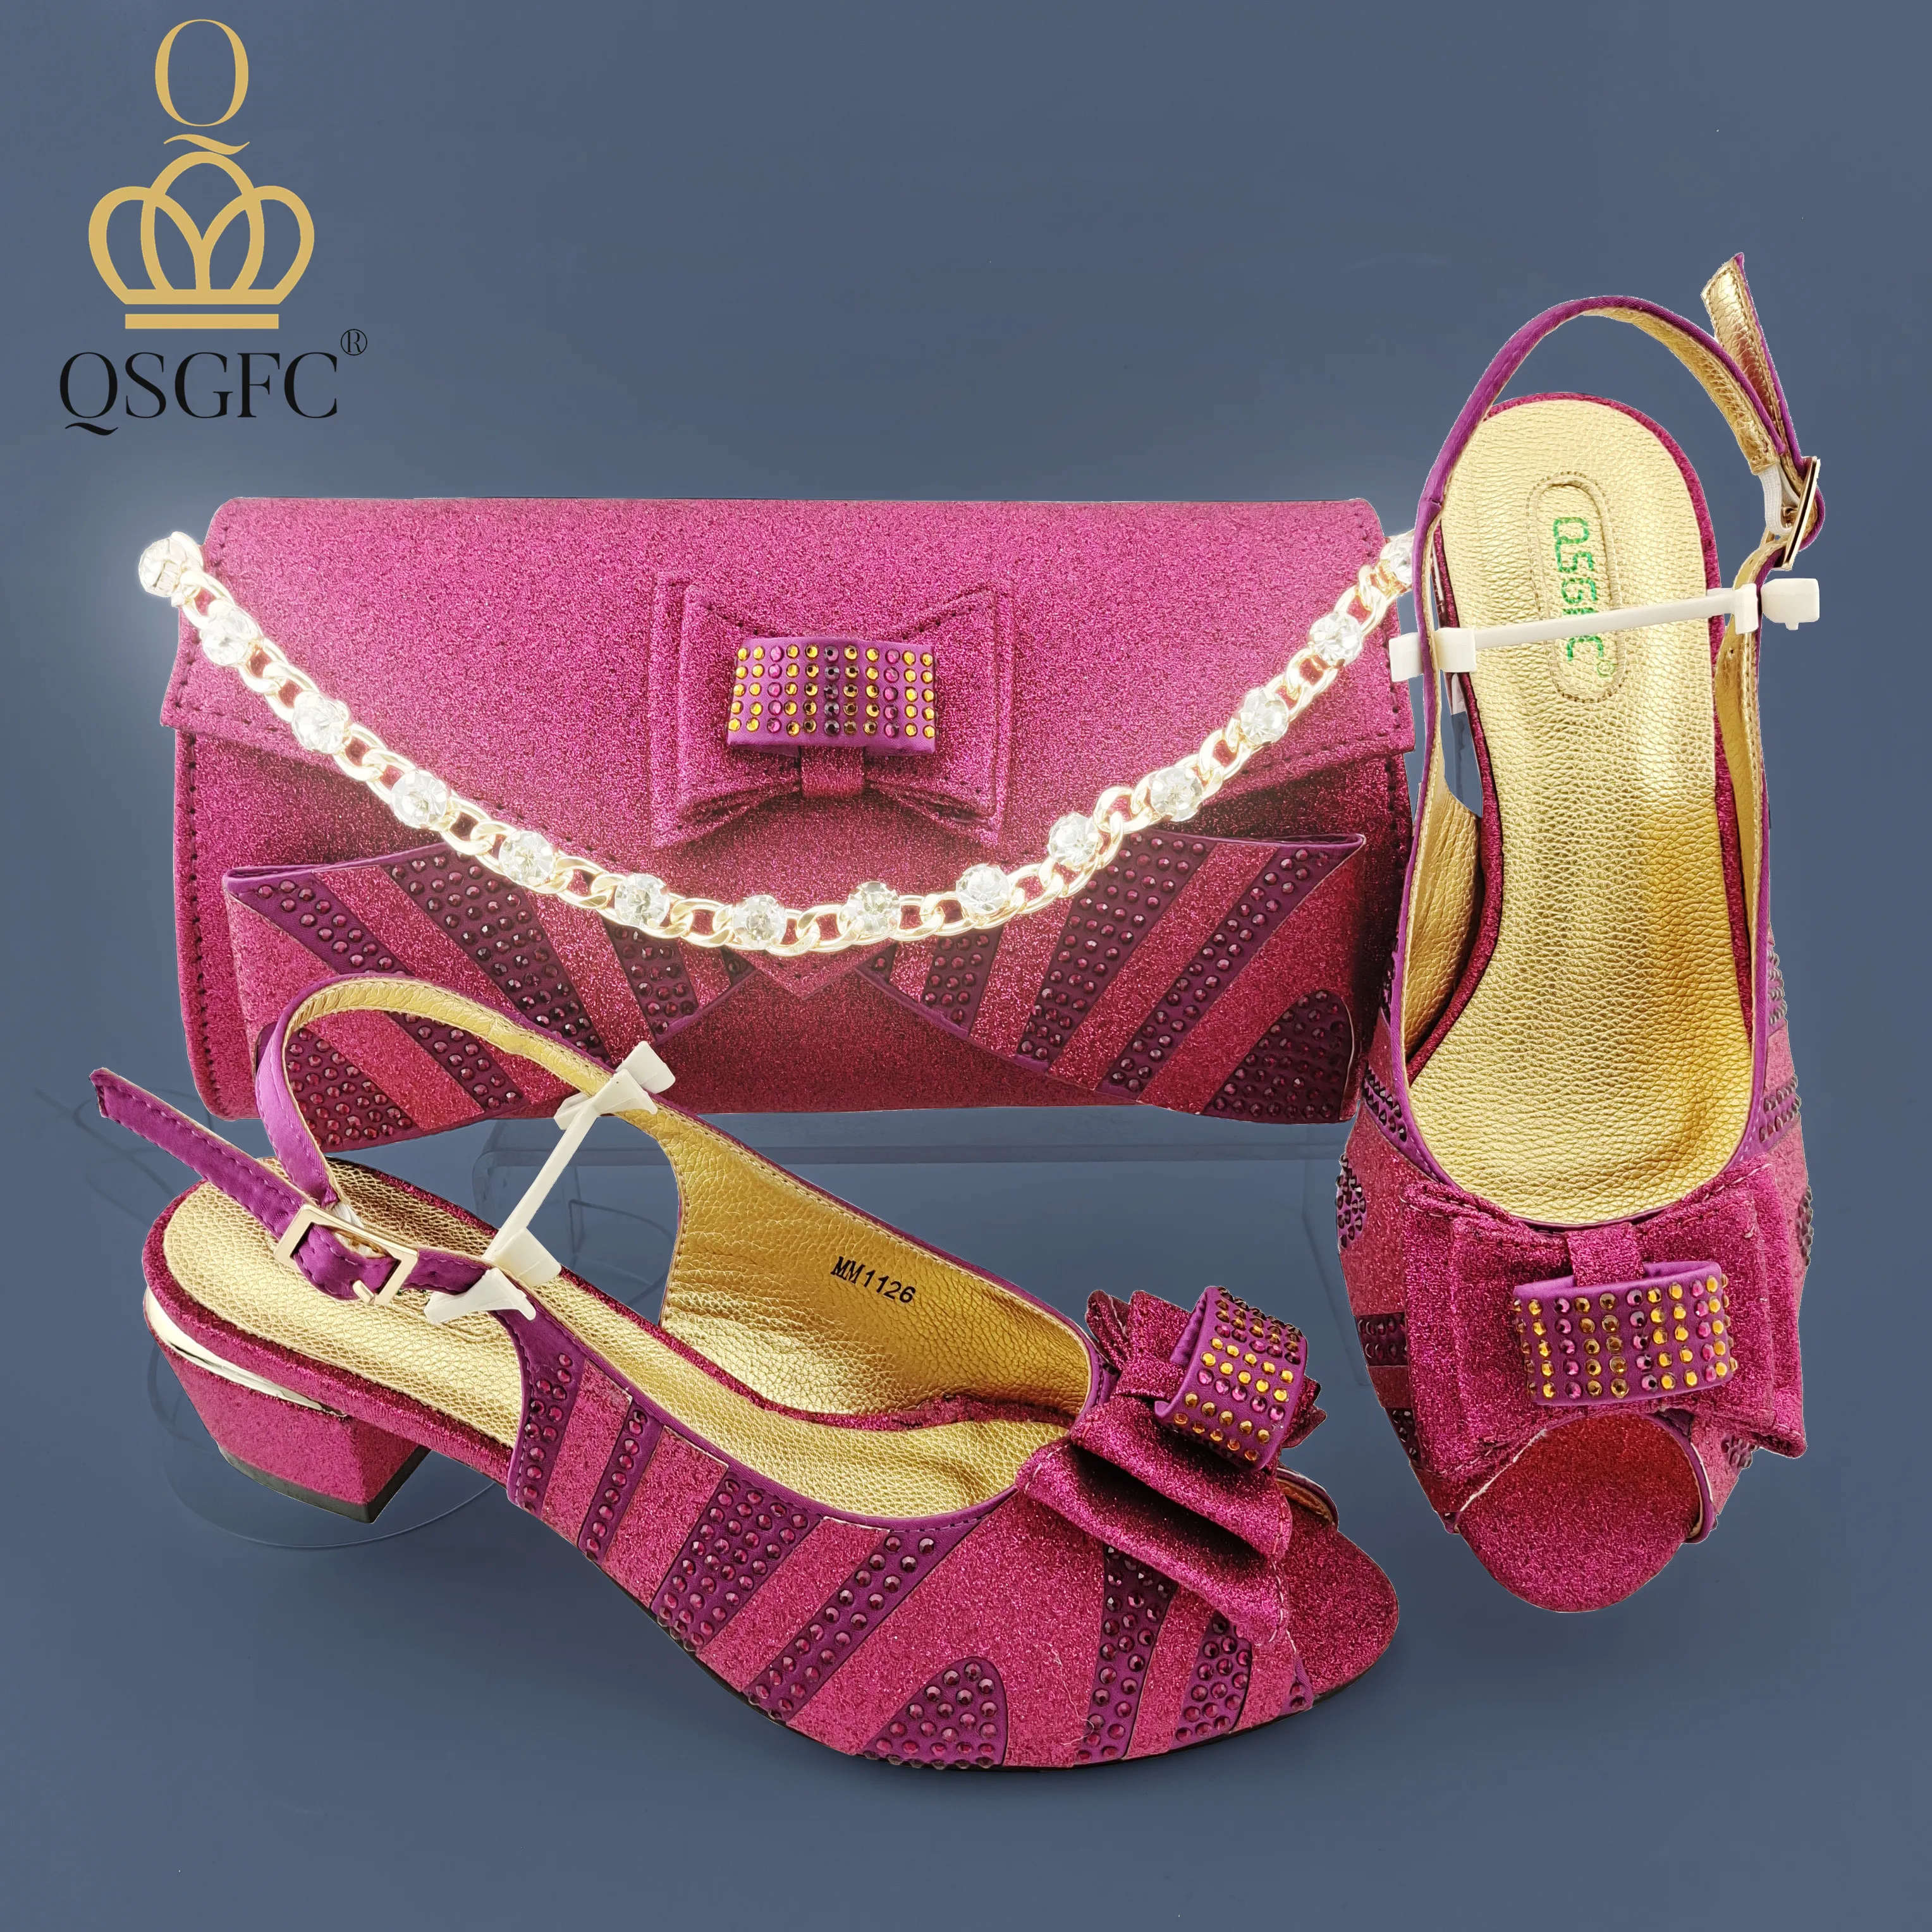 

QSGFC новейший итальянский дизайн женская обувь с подходящей сумкой женские свадебные женские сандалии на среднем каблуке пурпурного цвета